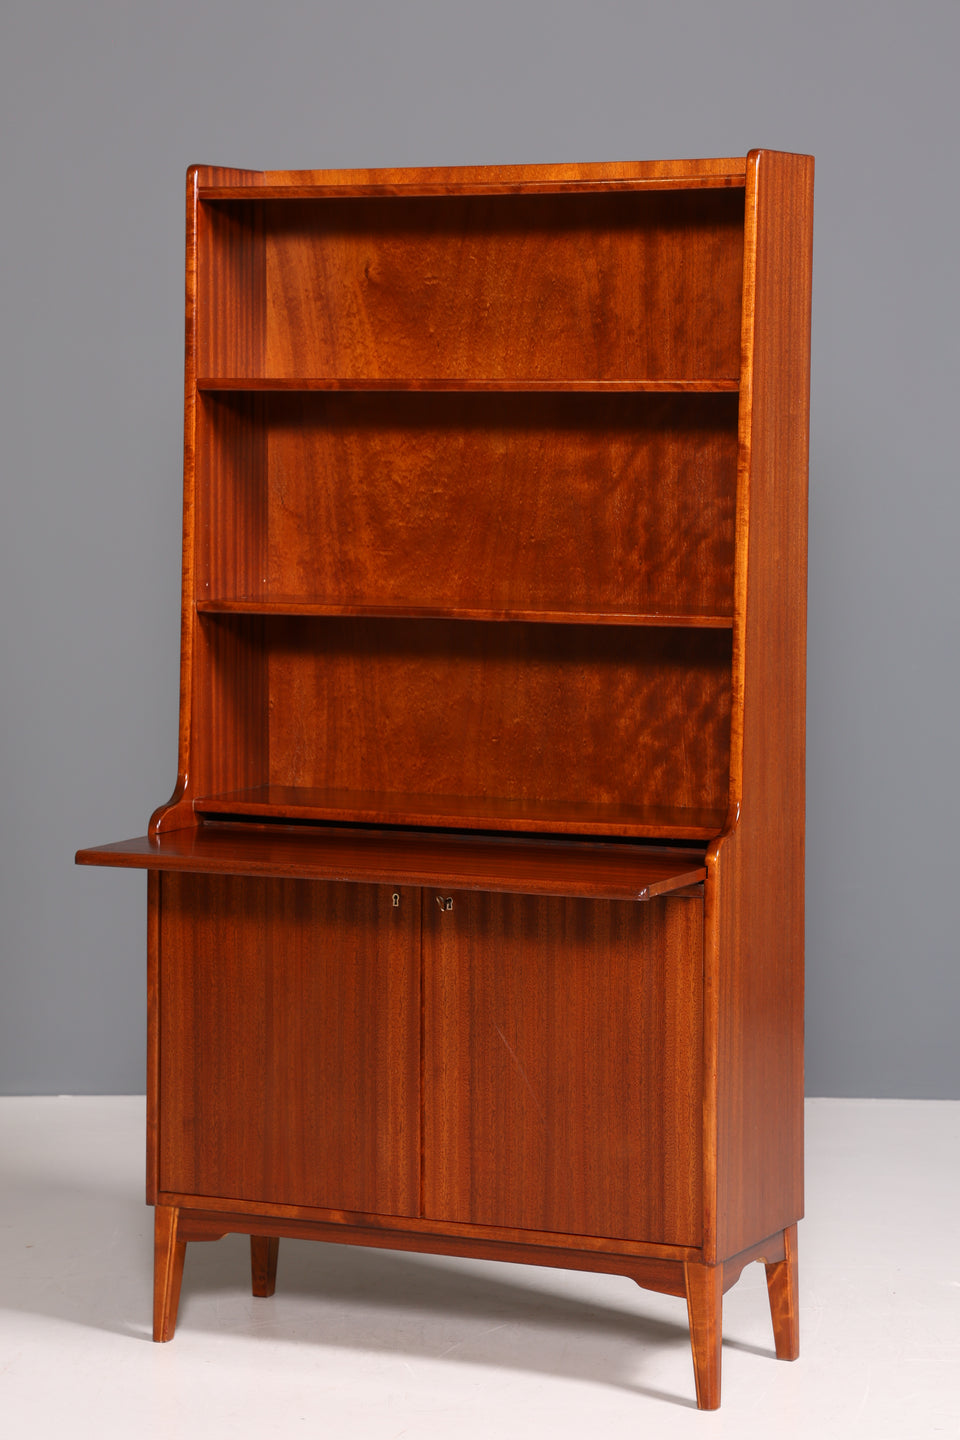 Wunderschöner Mid Century Schrank Bücherregal Vintage Highboard Sekretär Holz Regal 60er Jahre